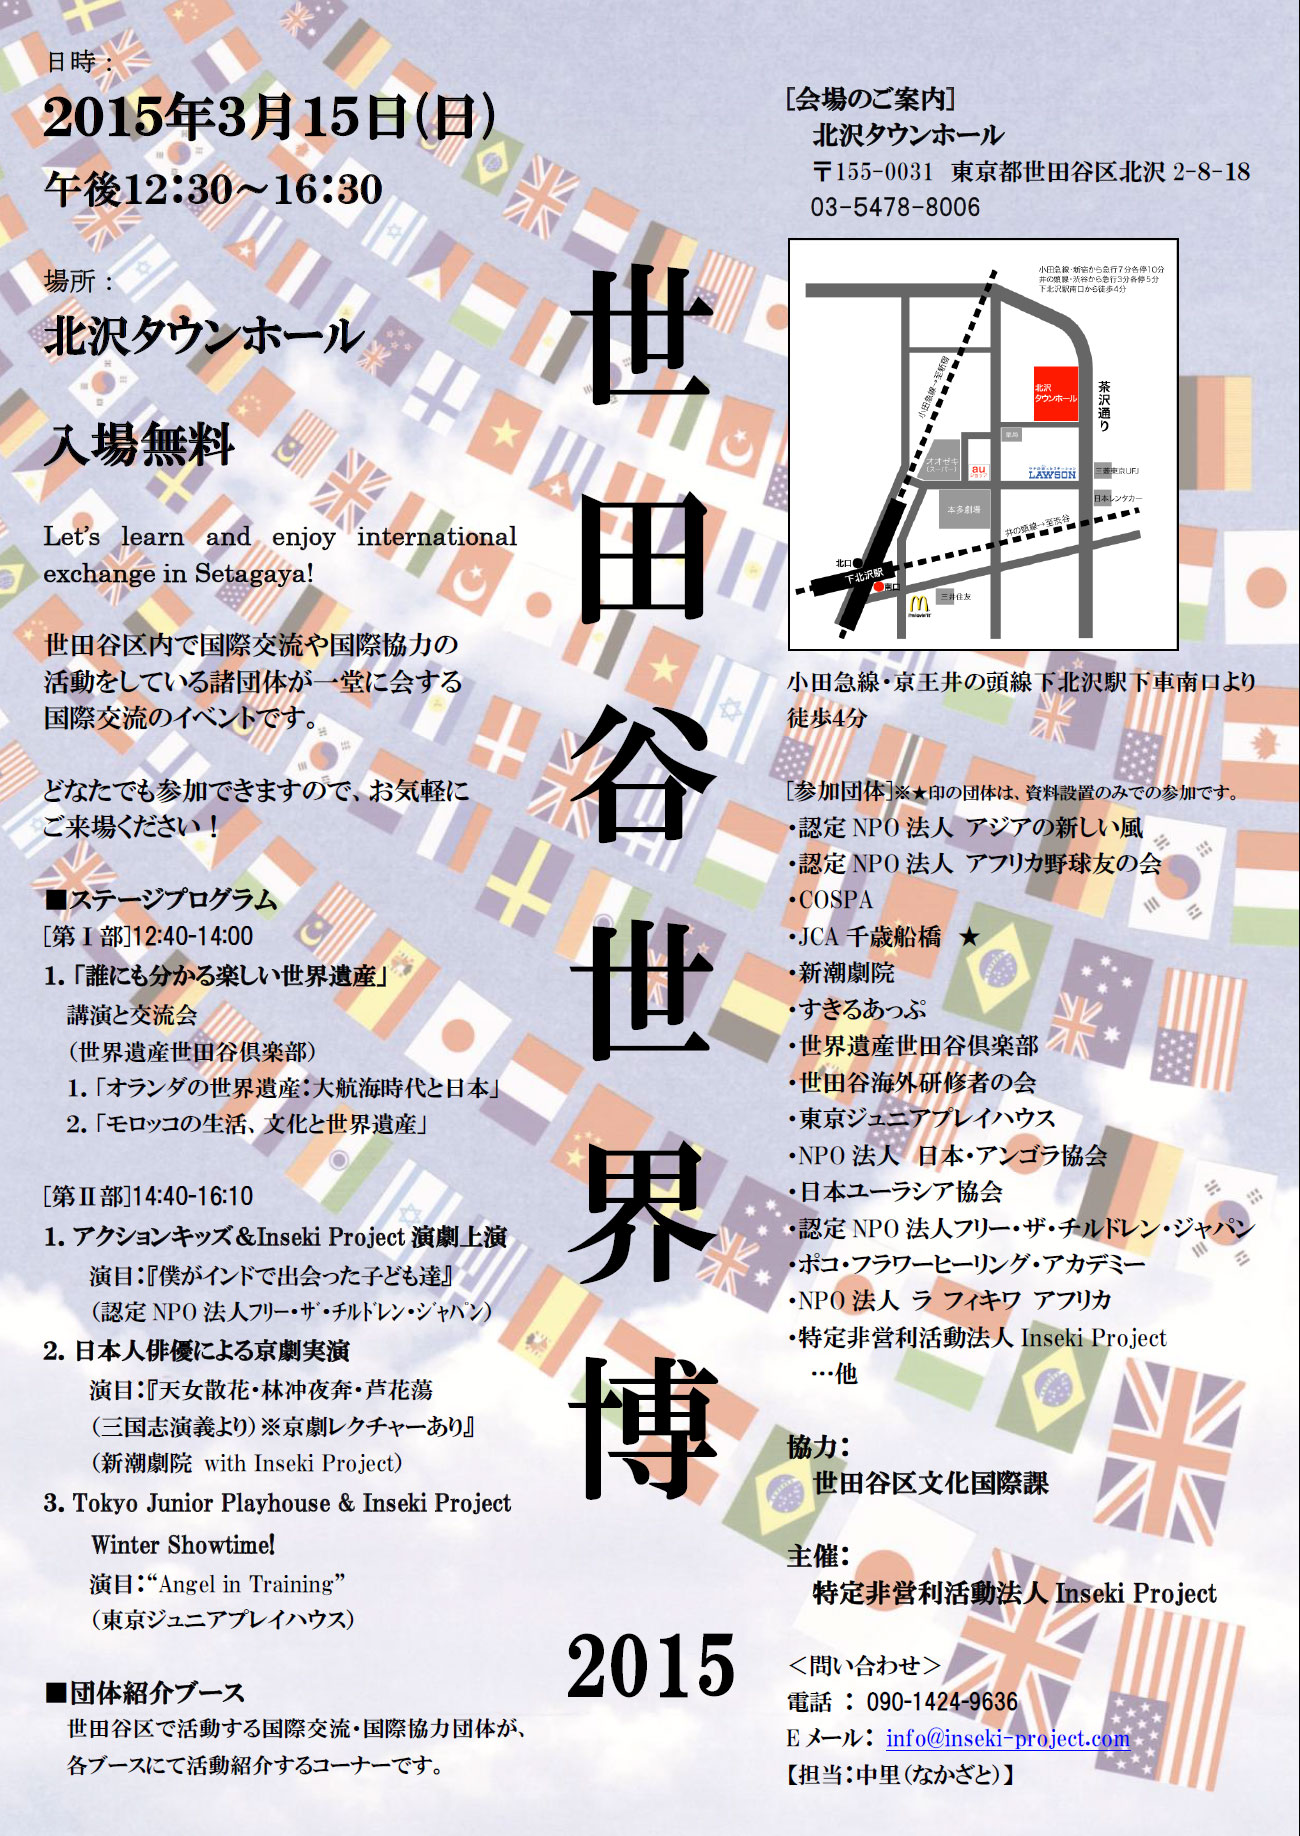 世田谷世界博2015にて日本人俳優による京劇実演